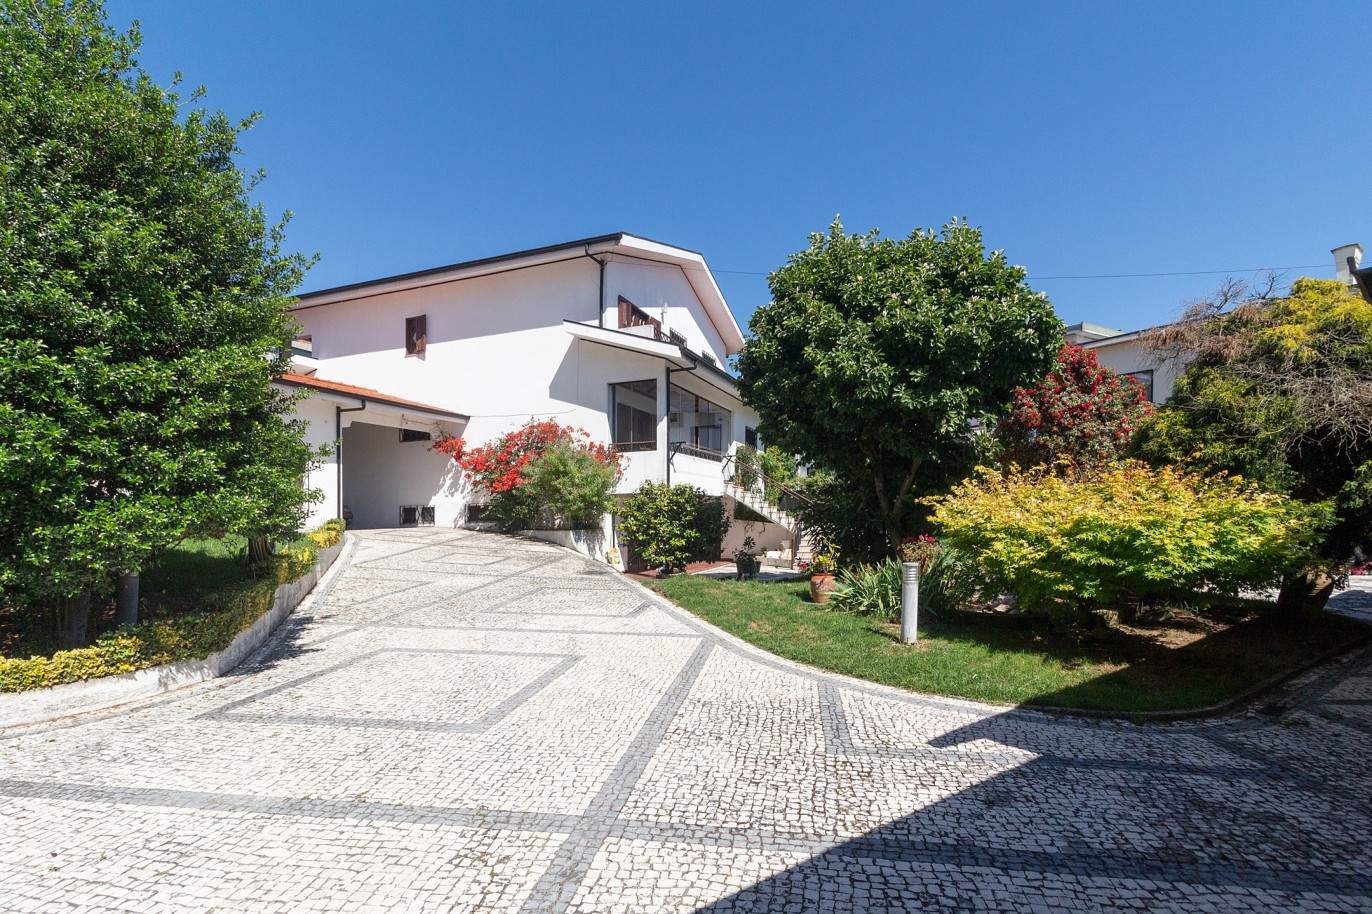 Casa con jardín, en venta, en S. Mamede de Infesta, Oporto, Portugal_201246